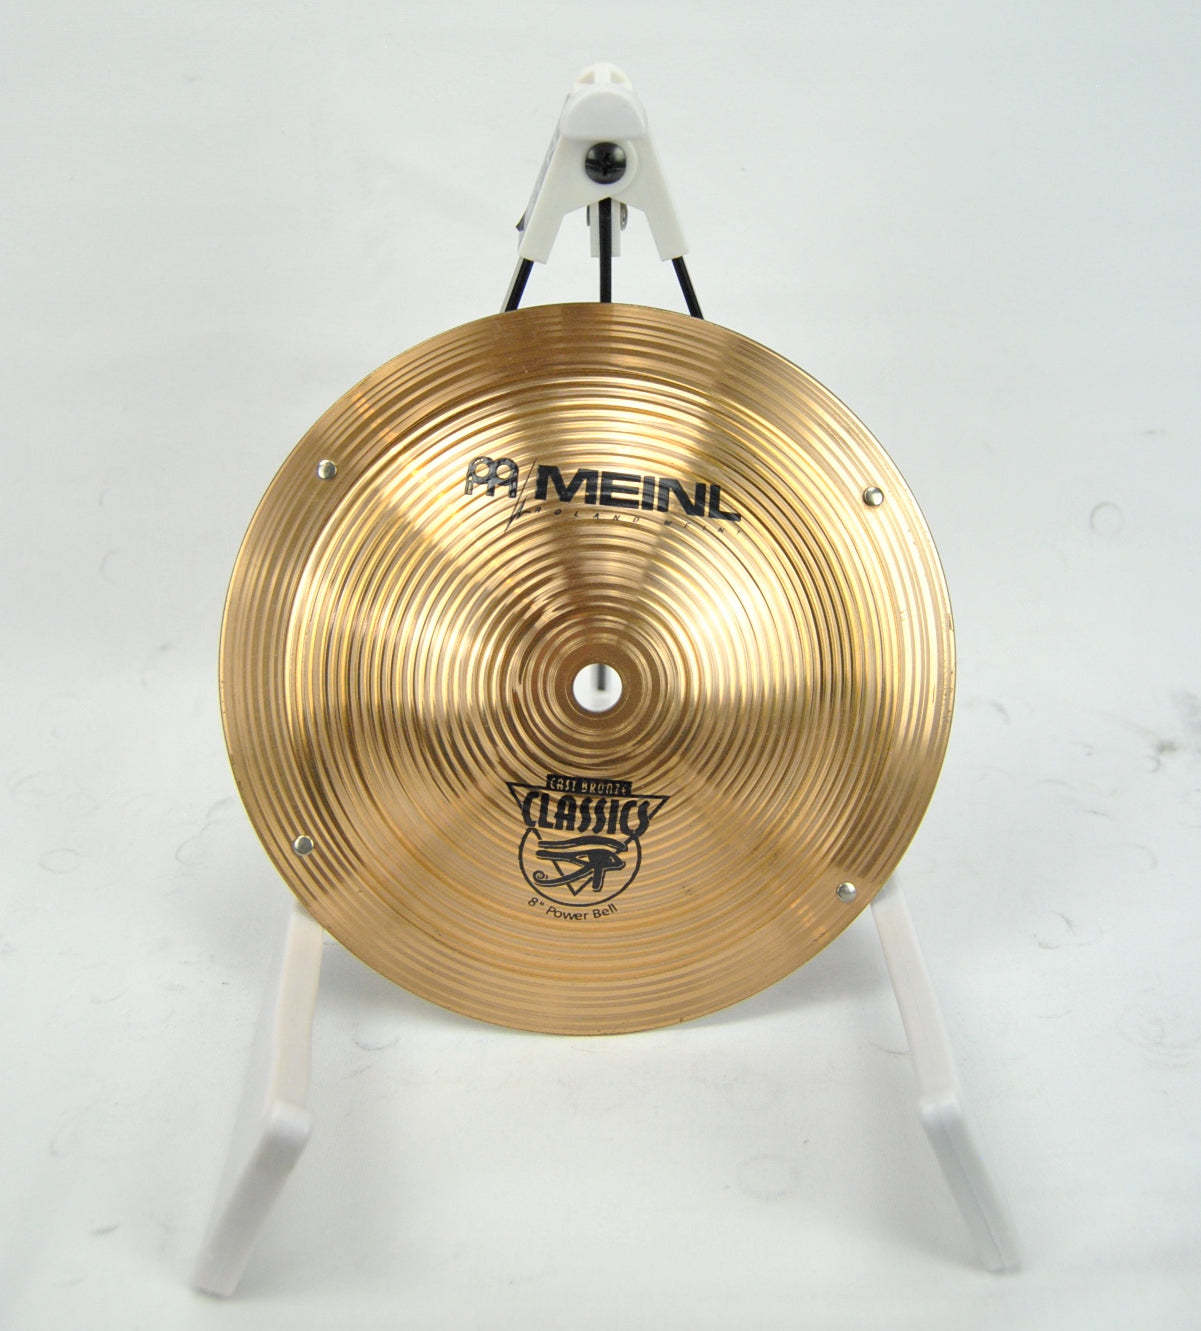 Meinl Classics 8“ Power Bell